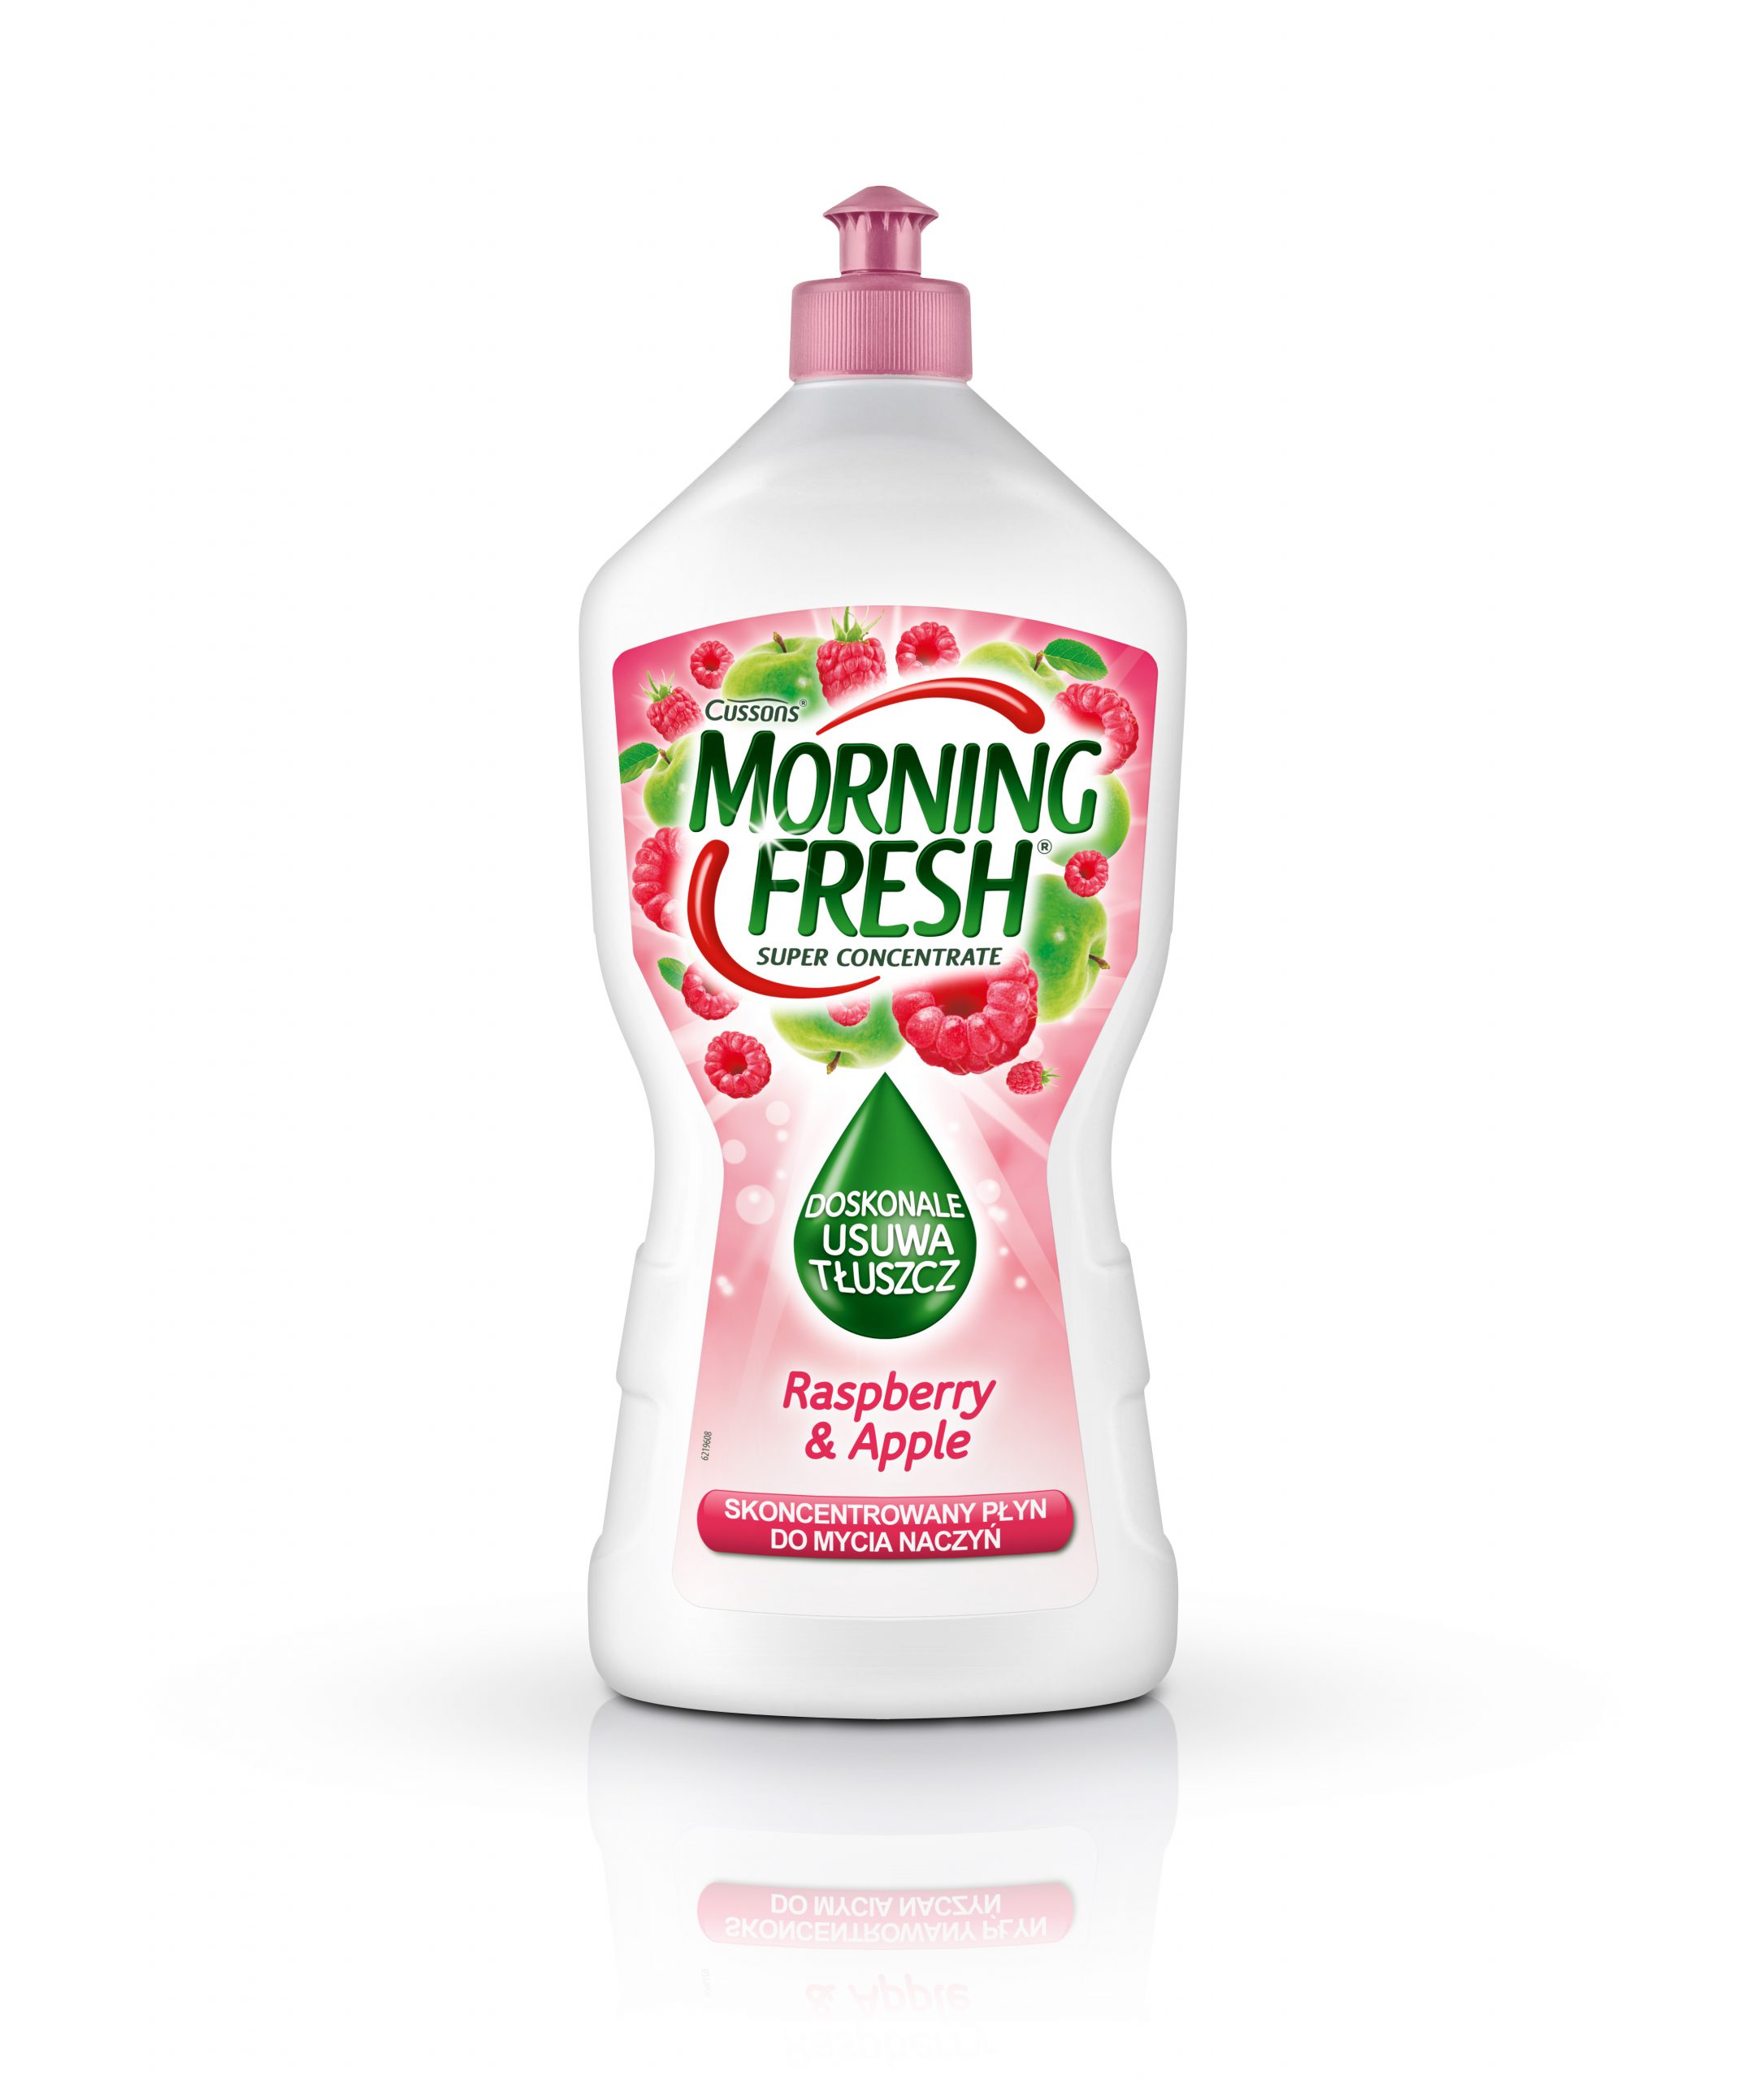 Nowe płyny do mycia naczyń od Morning Fresh